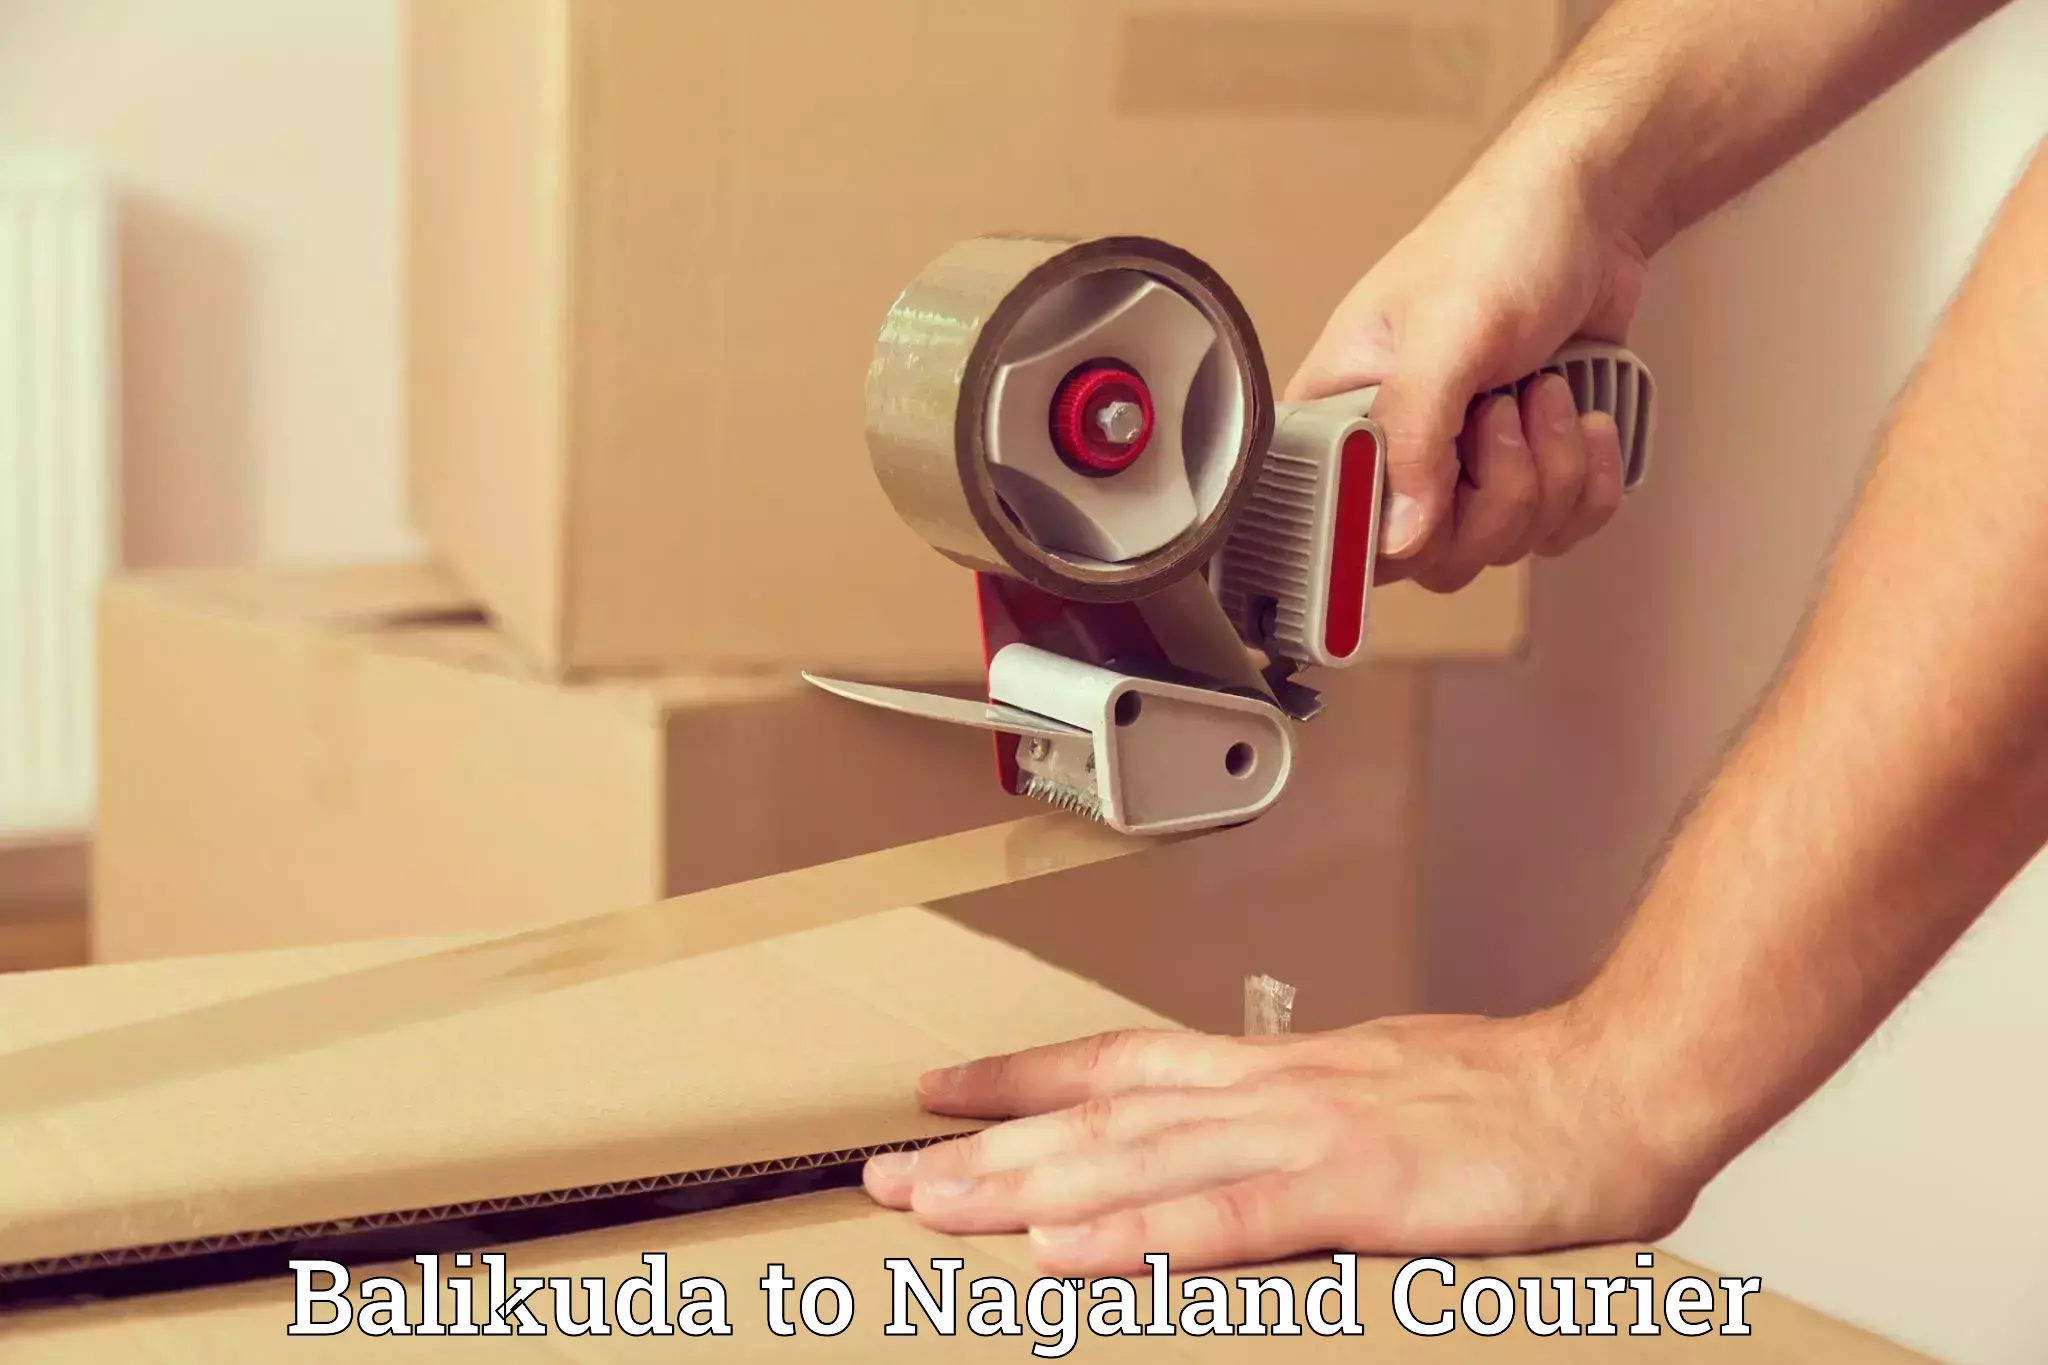 Household moving experts Balikuda to Nagaland